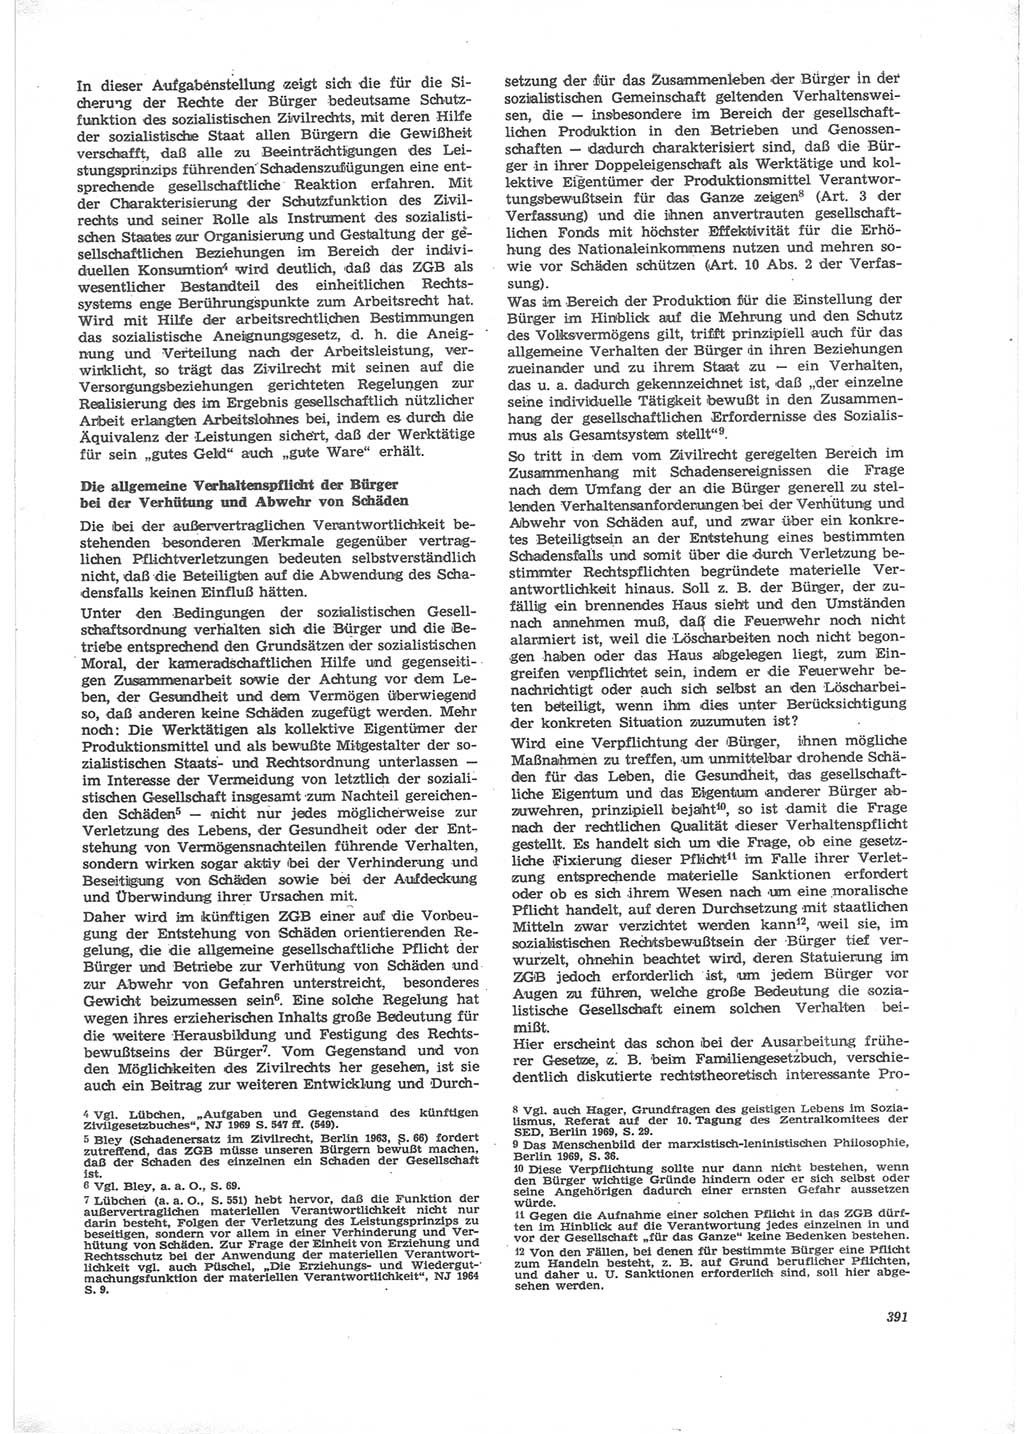 Neue Justiz (NJ), Zeitschrift für Recht und Rechtswissenschaft [Deutsche Demokratische Republik (DDR)], 24. Jahrgang 1970, Seite 391 (NJ DDR 1970, S. 391)